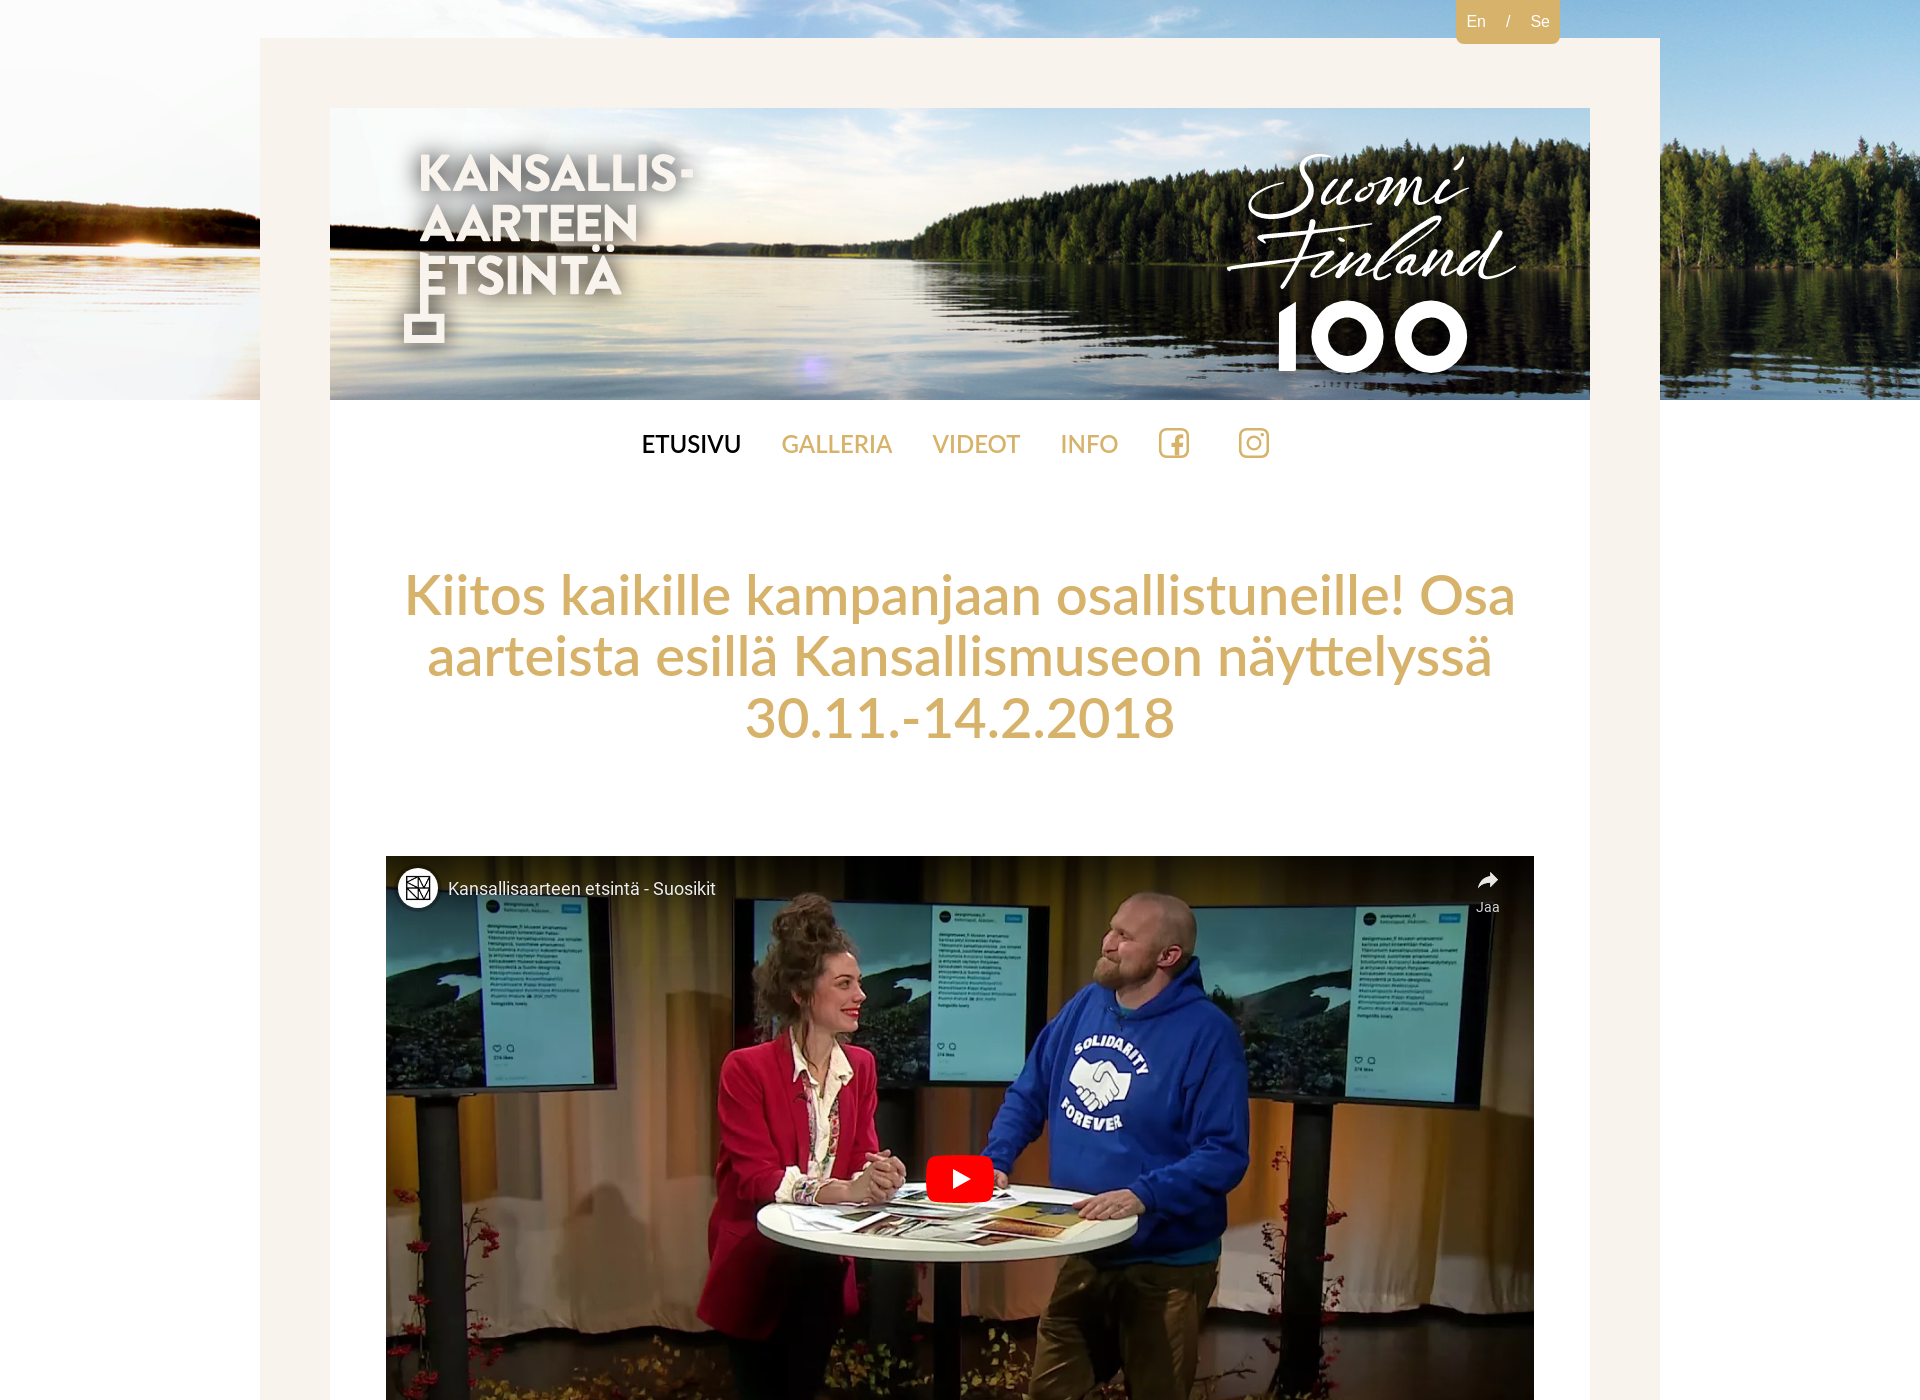 Skärmdump för kansallisaarteenetsinta.fi